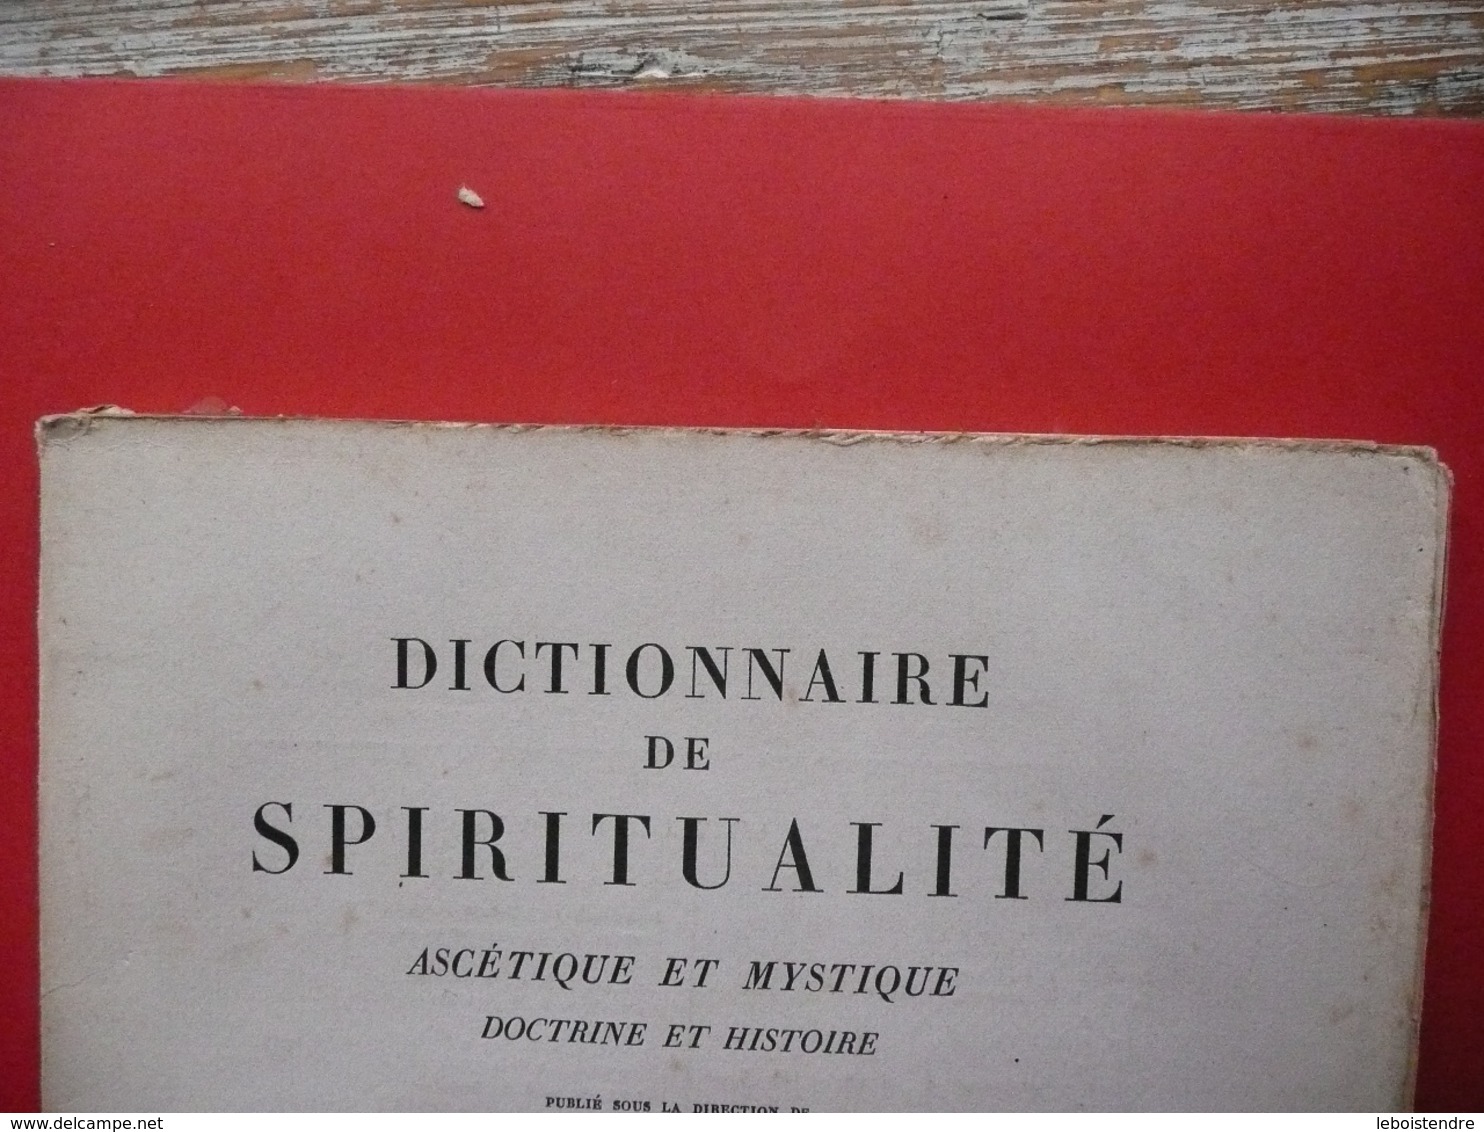 DICTIONNAIRE DE SPIRITUALITE FASCICULE IV  ASCETIQUE ET MYSTIQUE DOCTRINE ET HISTOIRE 1935 VILLER CAVALLERA GUIBERT